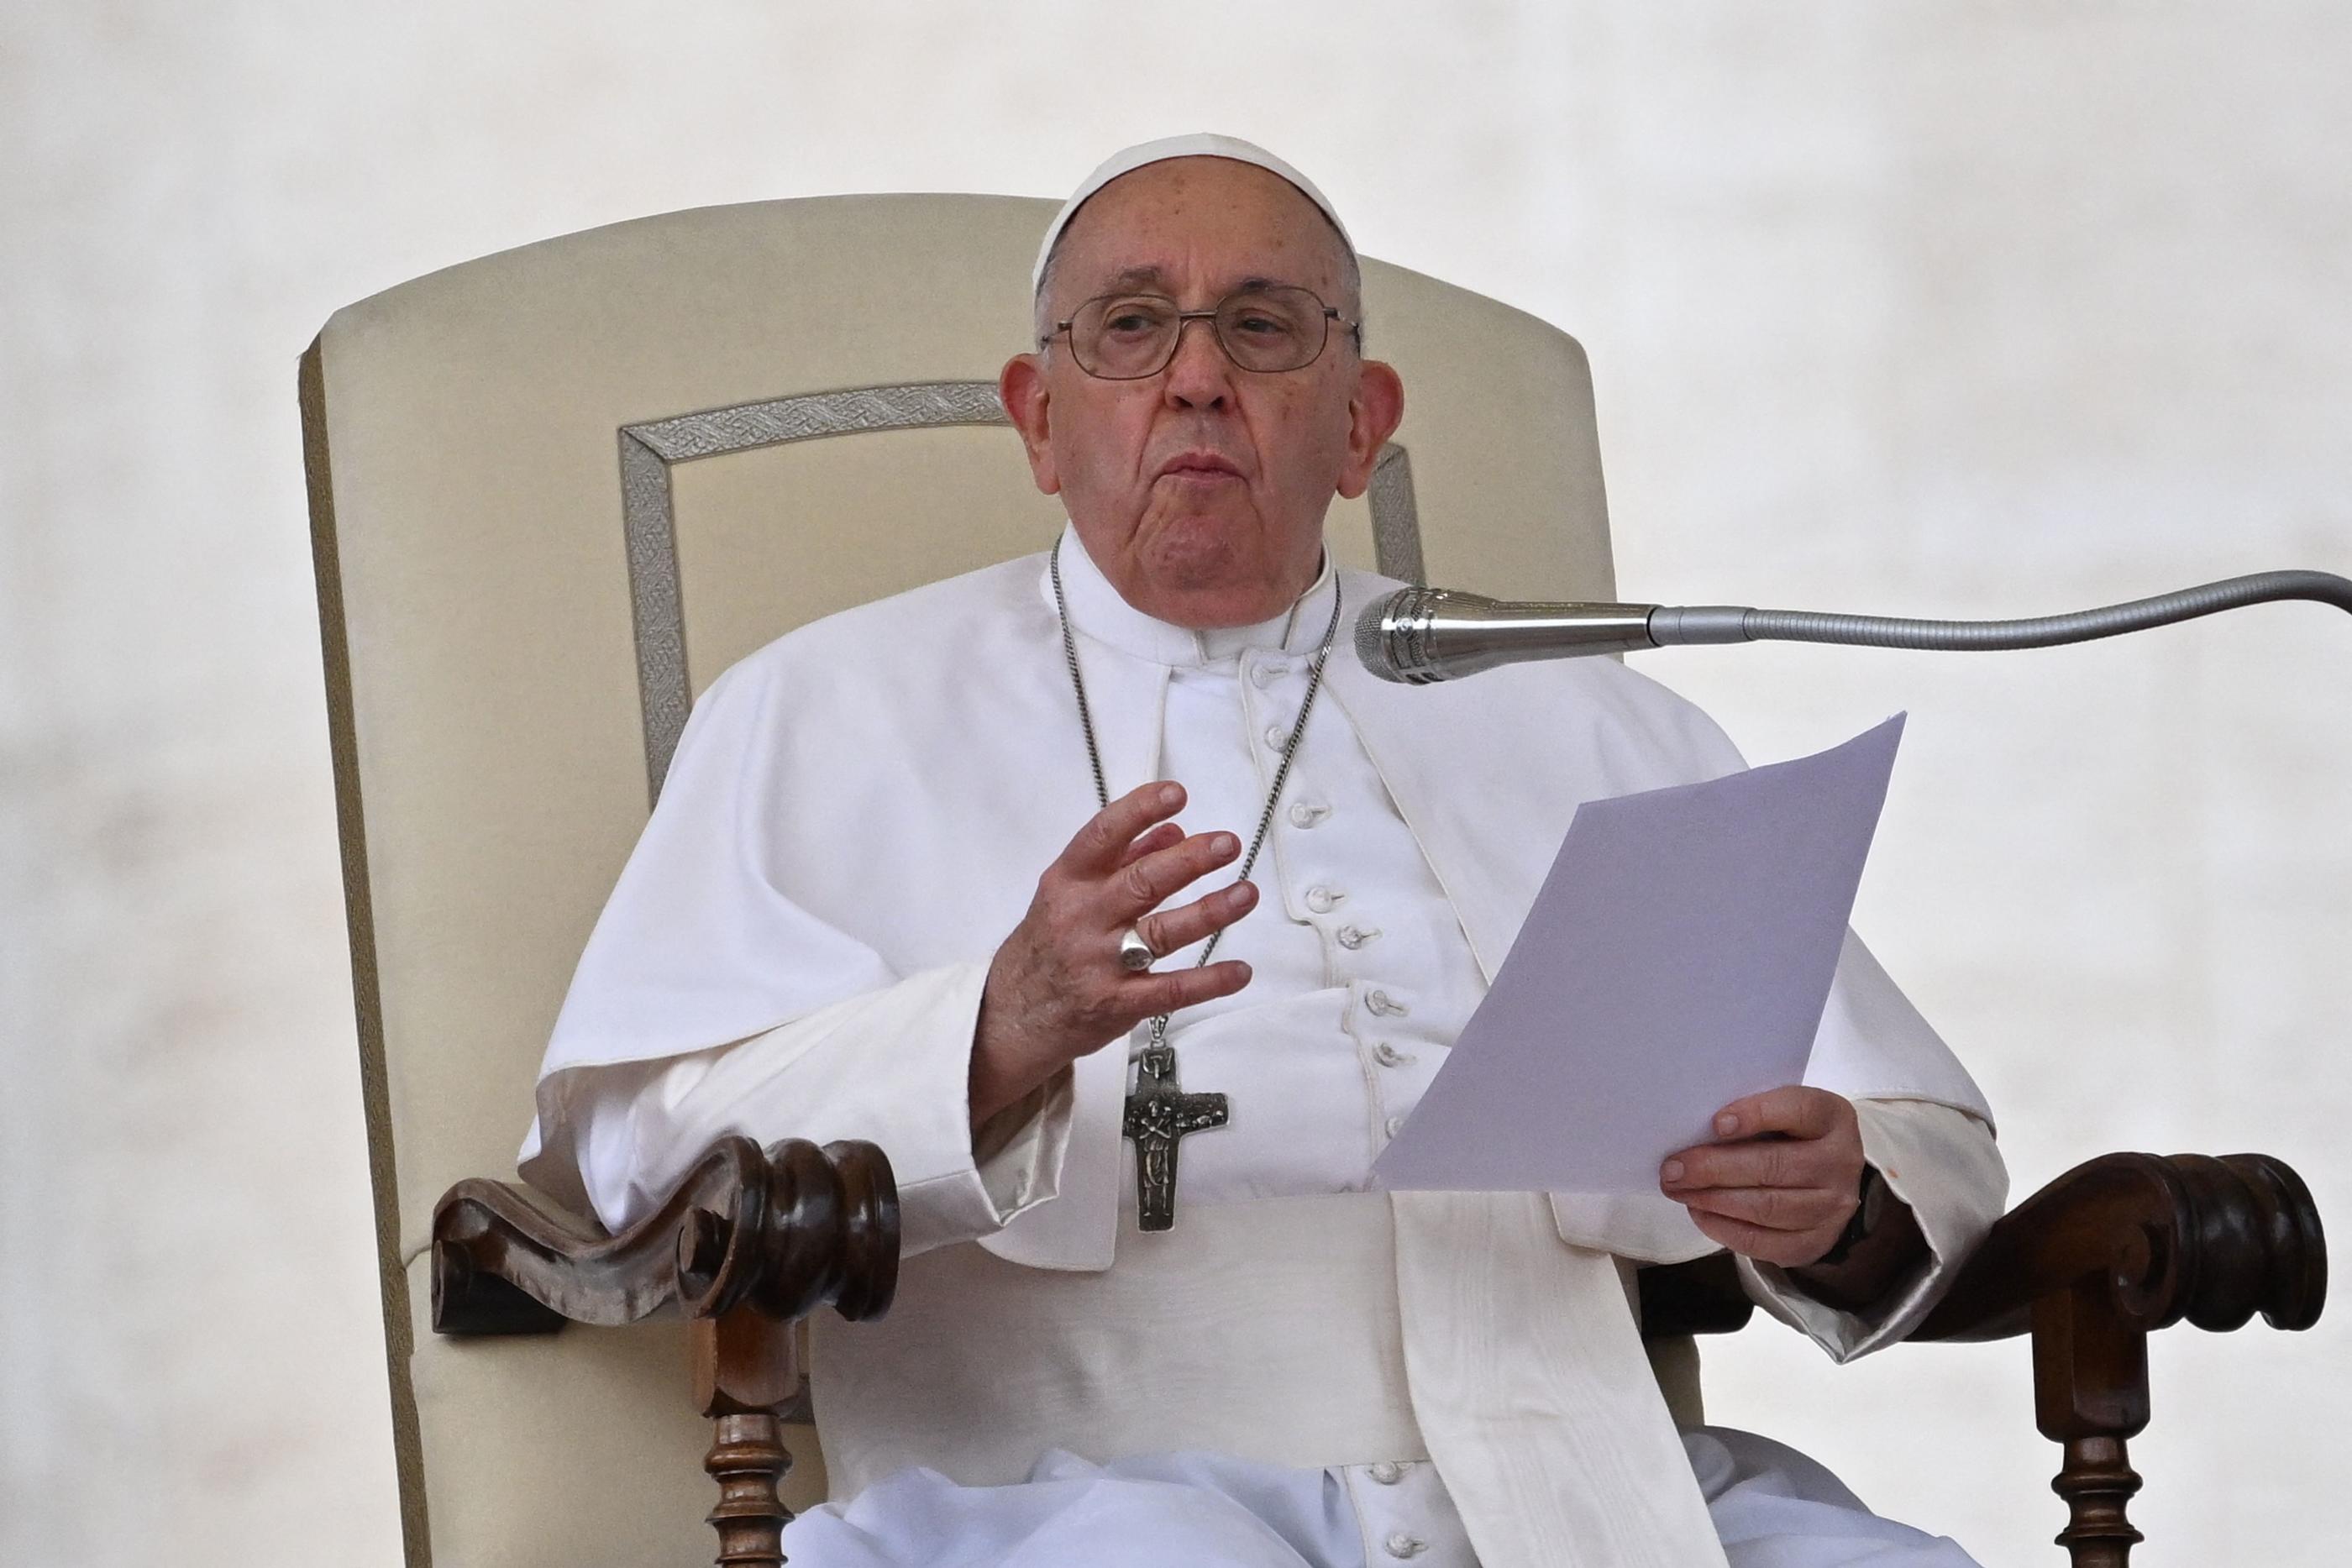 Le pape François est attendu à Marseille dans le cadre des Rencontres méditerranéennes, lors desquelles il devrait réaffirmer son soutien pour la cause des migrants. AFP/Andreas Solaro